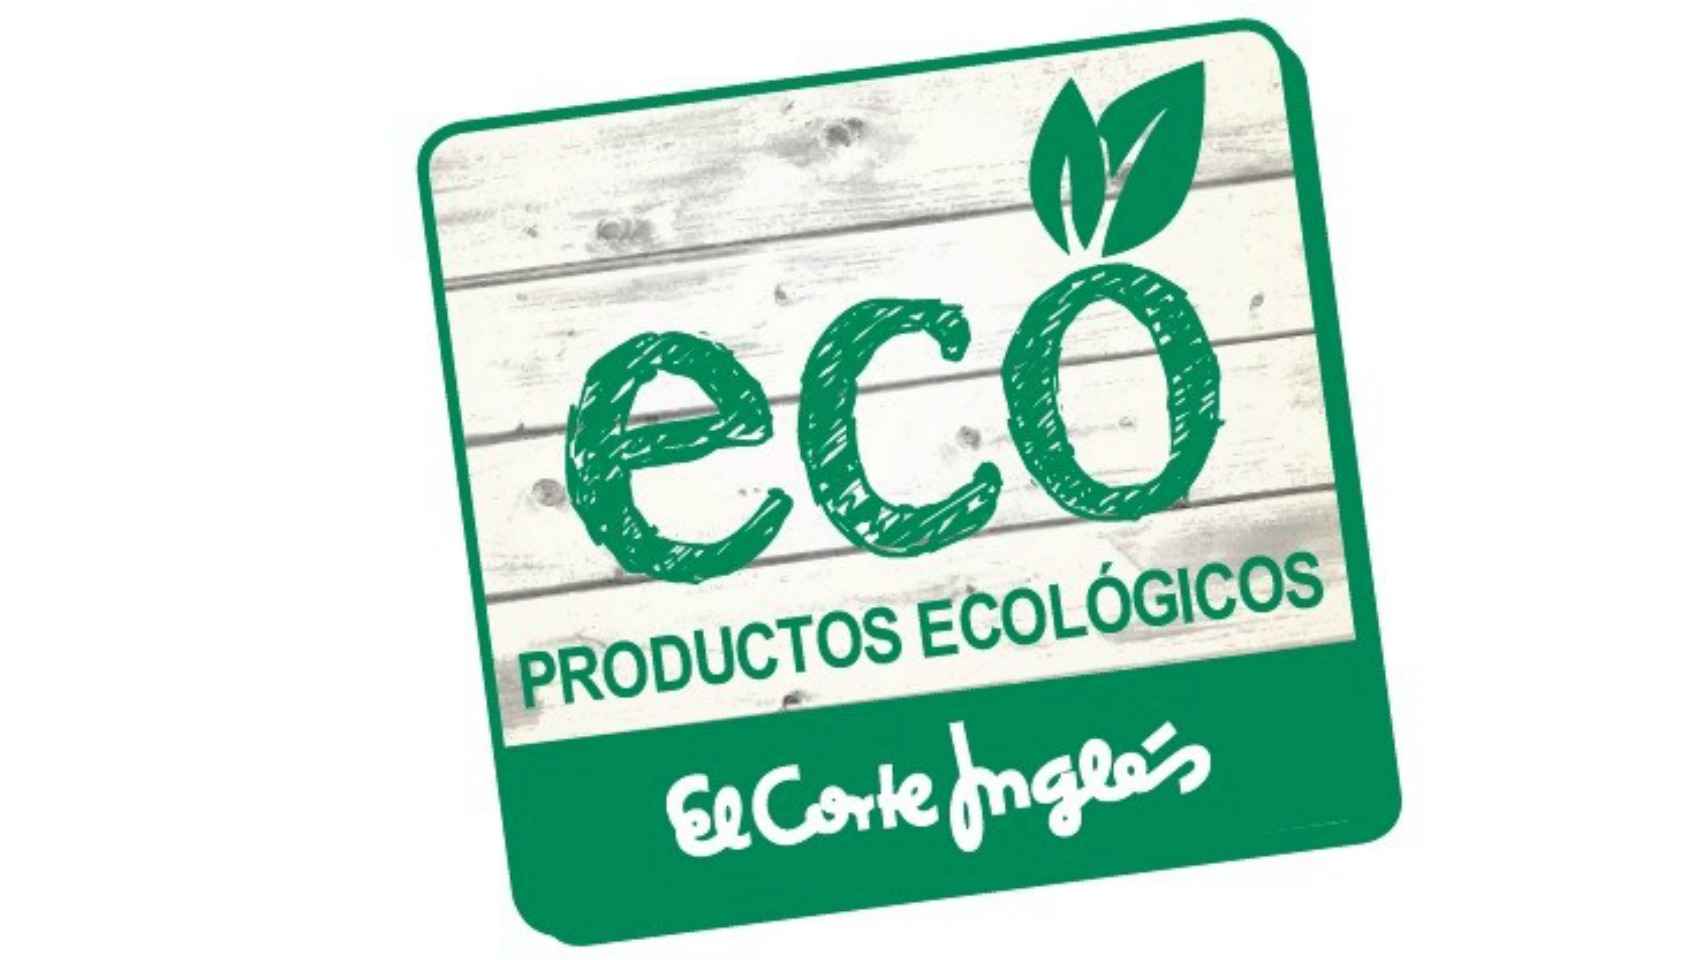 Etiqueta distintiva de alimentos ecológicos en las tiendas de El Corte Inglés